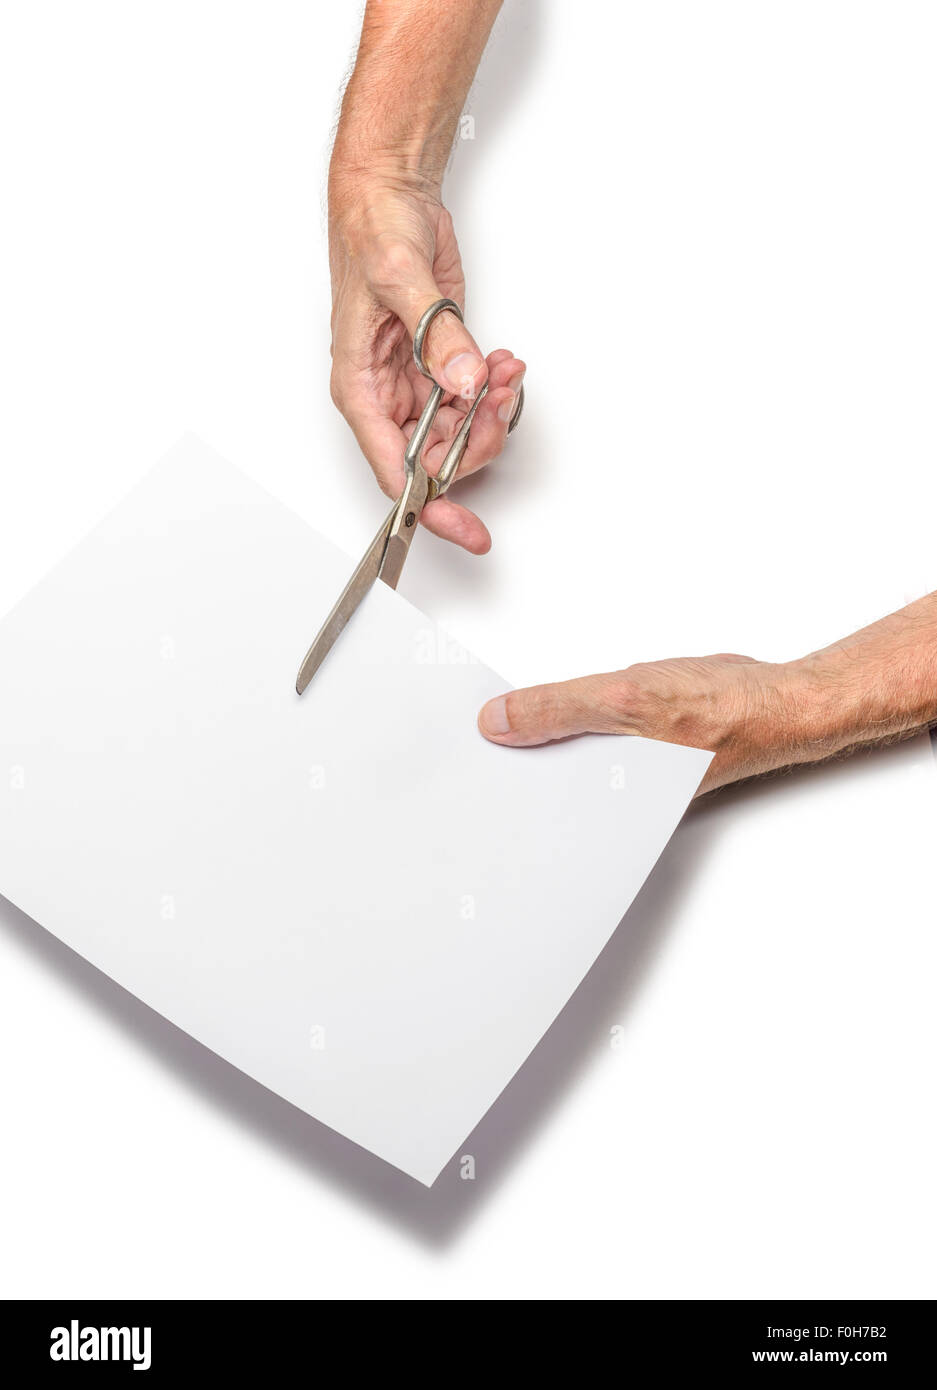 Un uomo è il taglio di un foglio di carta bianca utilizzando forbici metallico, su sfondo bianco Foto Stock